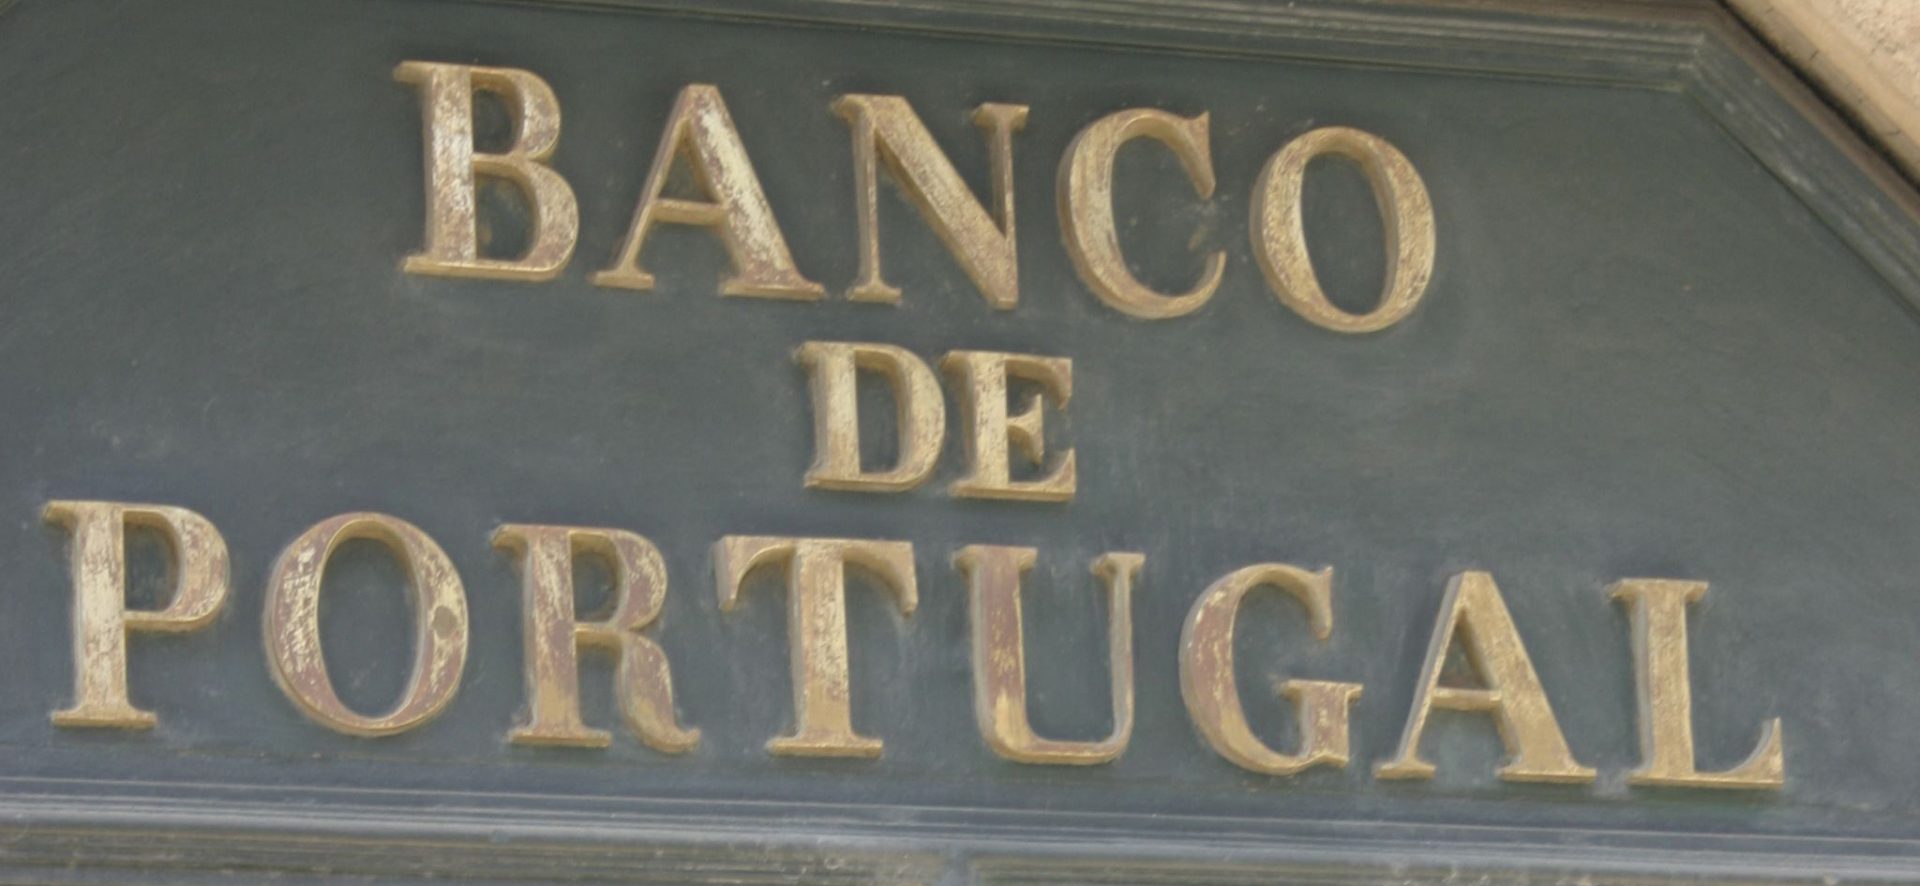 Candidatos ao Banco de Portugal terão audição prévia obrigatória no Parlamento